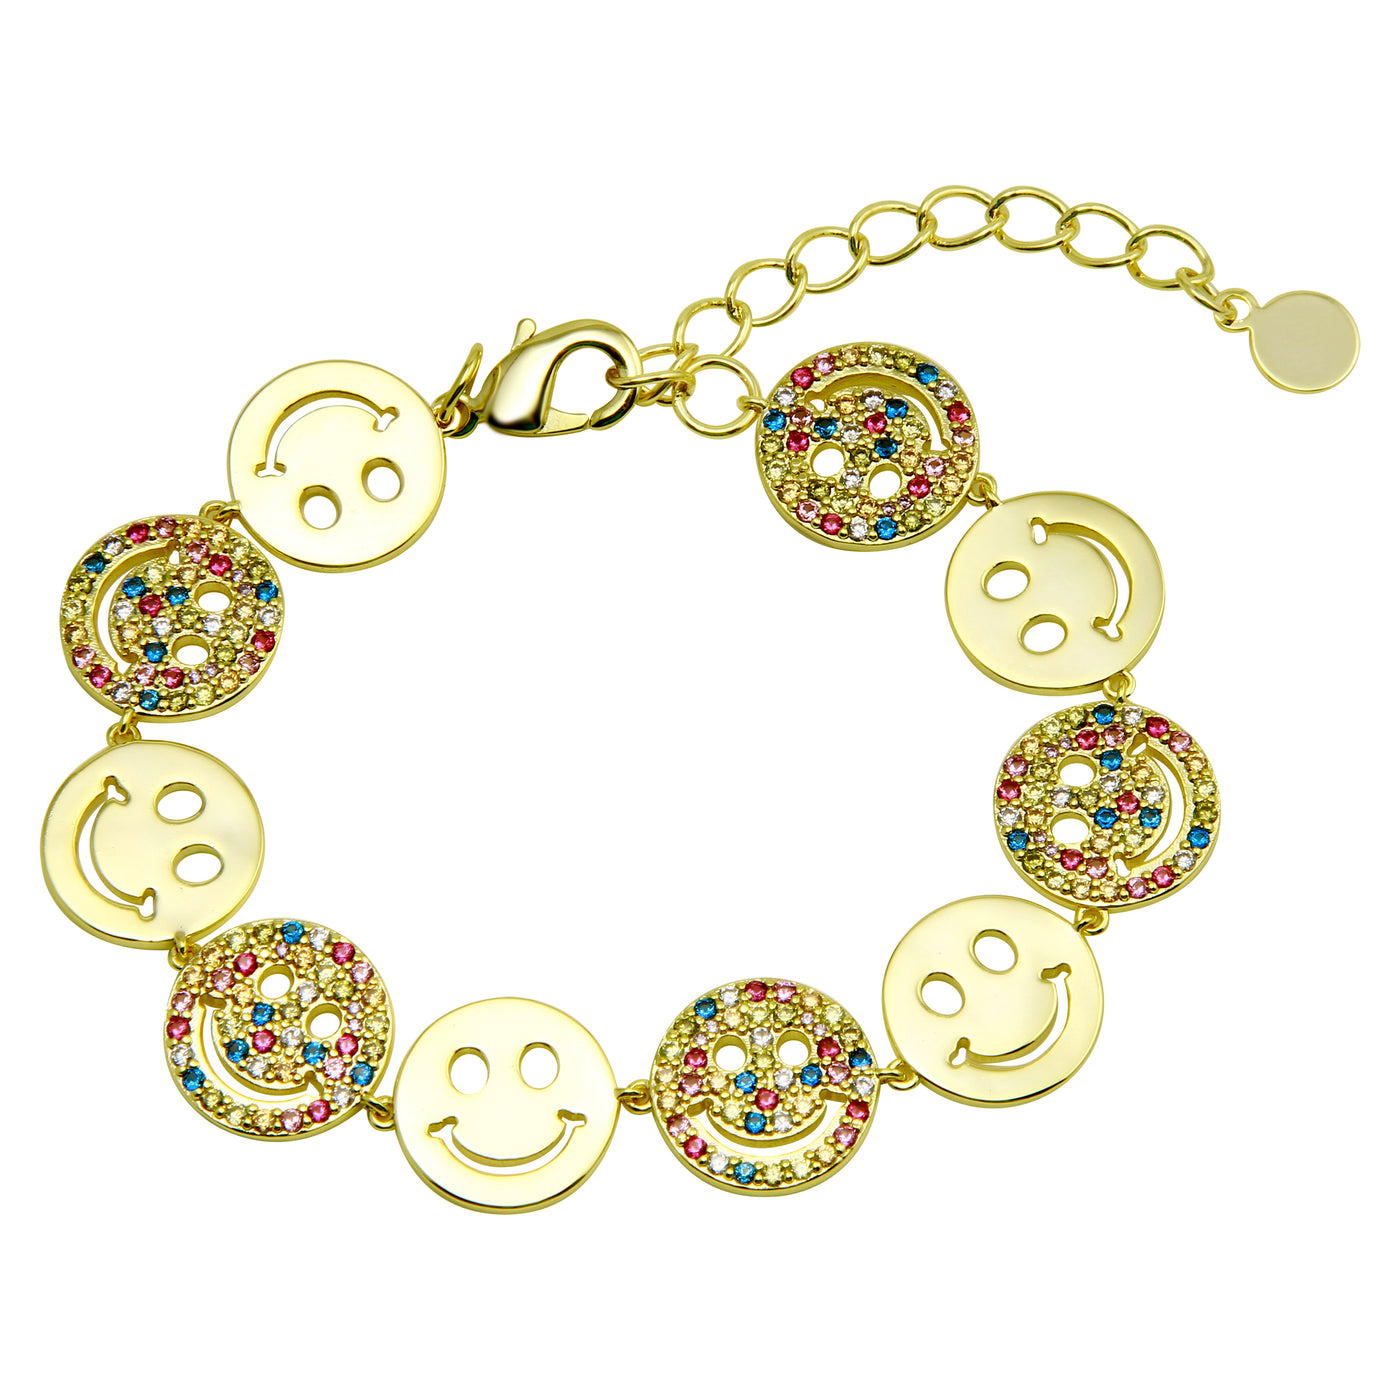 We Are Happy Rainbow Bracelet